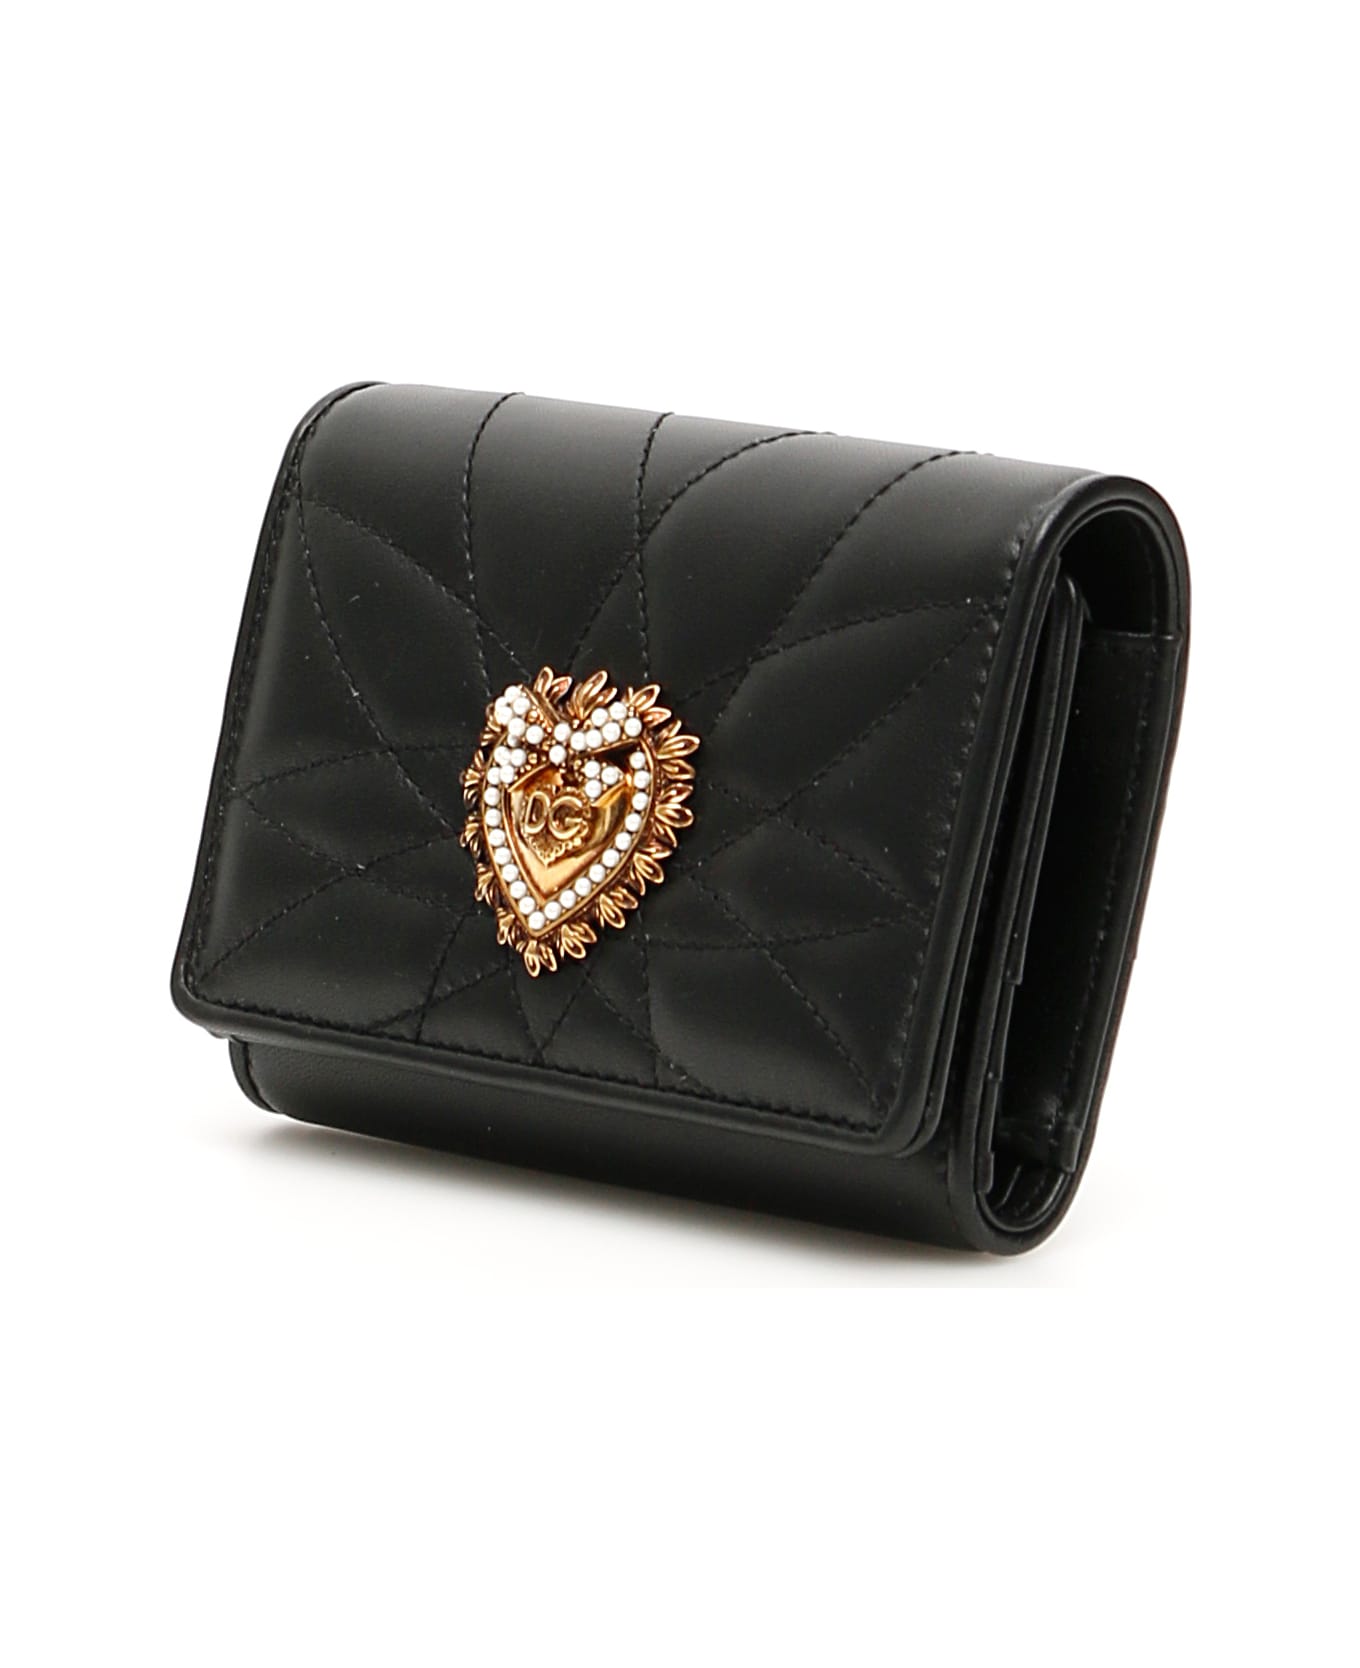 Dolce & Gabbana Devotion Quilted Wallet - NERO (Black)